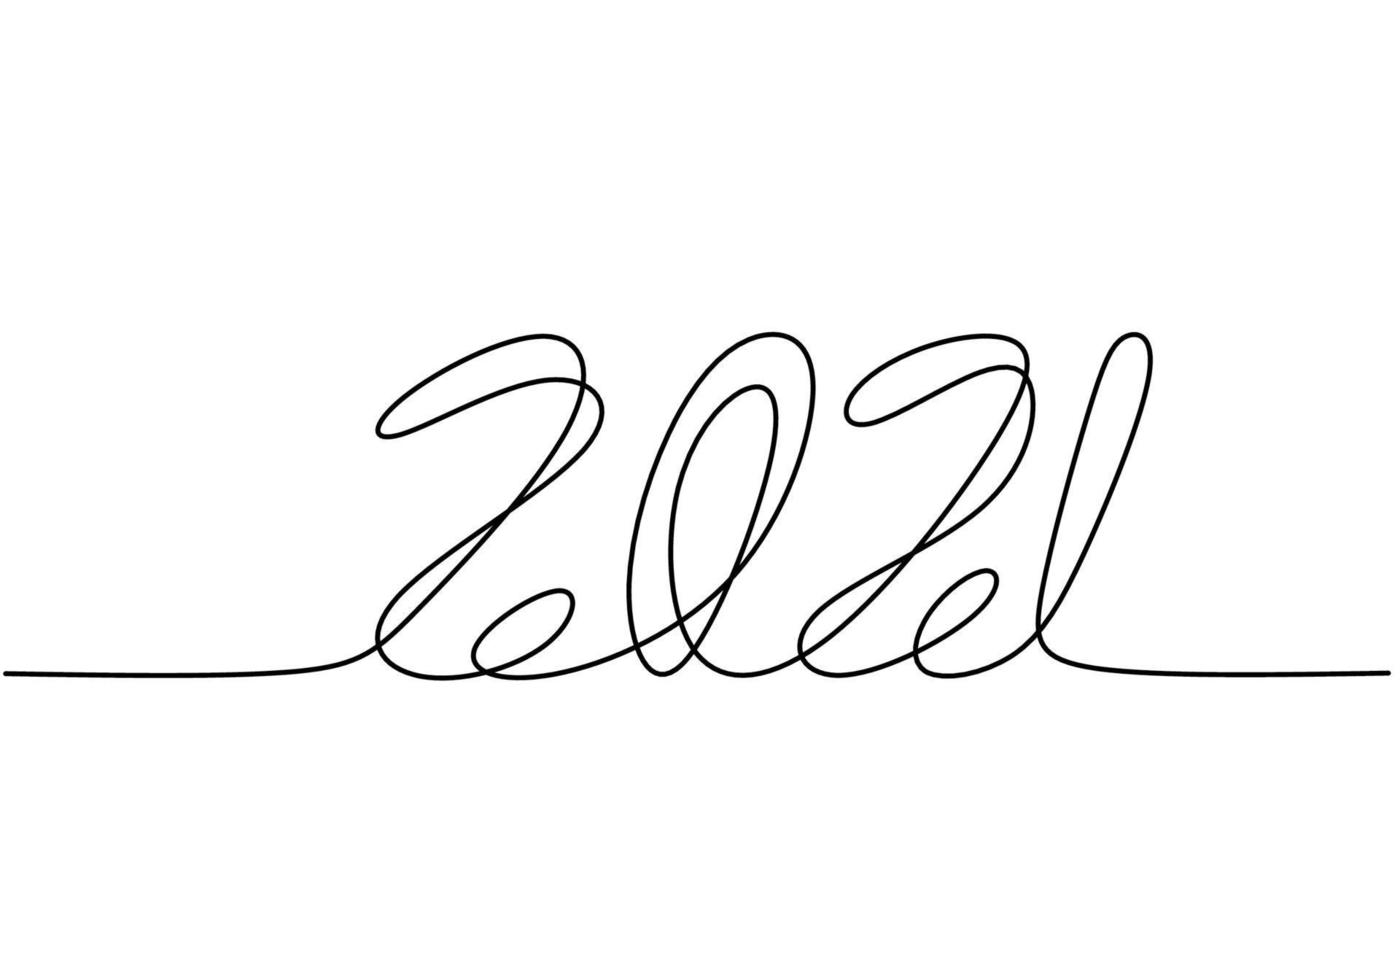 dibujo continuo de una línea de un año nuevo 2021. año nuevo chino del toro letras escritas a mano. celebración concepto de año nuevo aislado sobre fondo blanco. ilustración de dibujo vectorial vector